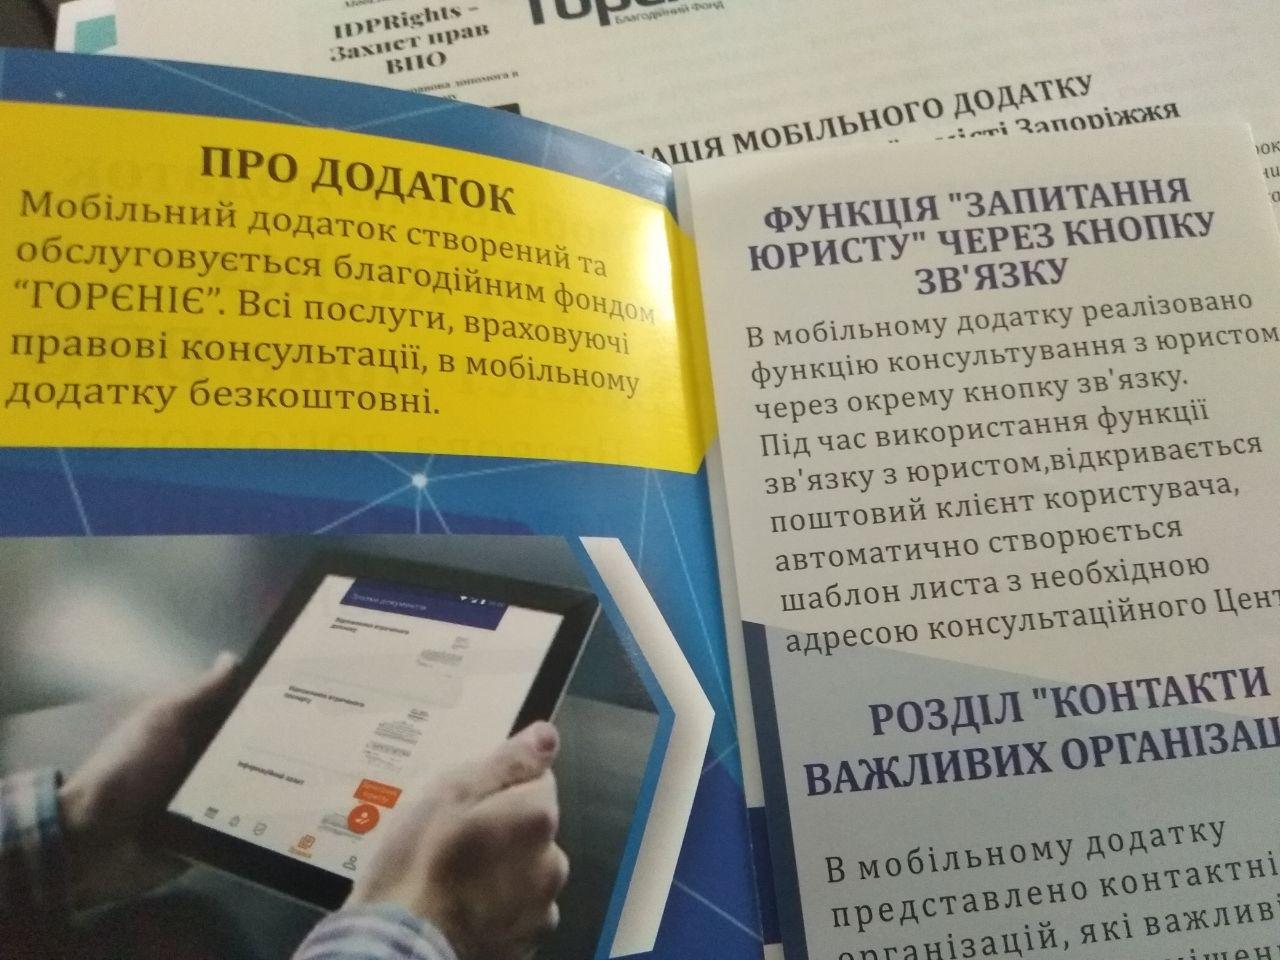 В Запорожье появилось новое узкопрофильное мобильное приложение (ФОТО)